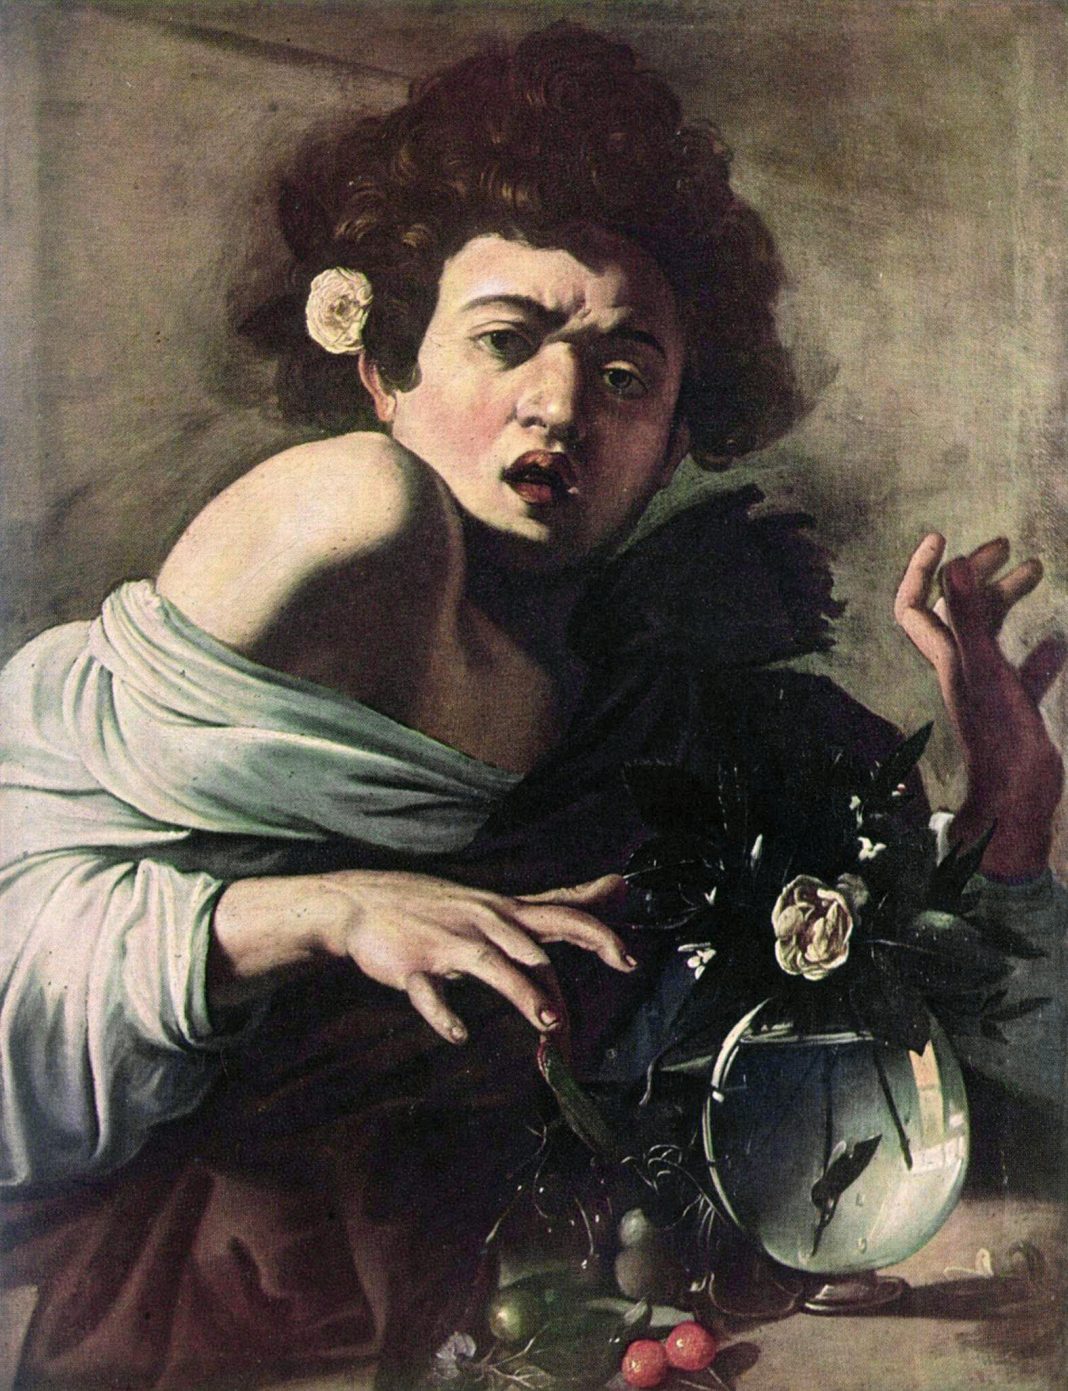 La storia dell’arte in galleria #1: Caravaggio – La forma delle ombrehttps://www.exibart.com/repository/media/eventi/2018/09/la-storia-dell’arte-in-galleria-1-caravaggio-8211-la-forma-delle-ombre-1068x1391.jpg